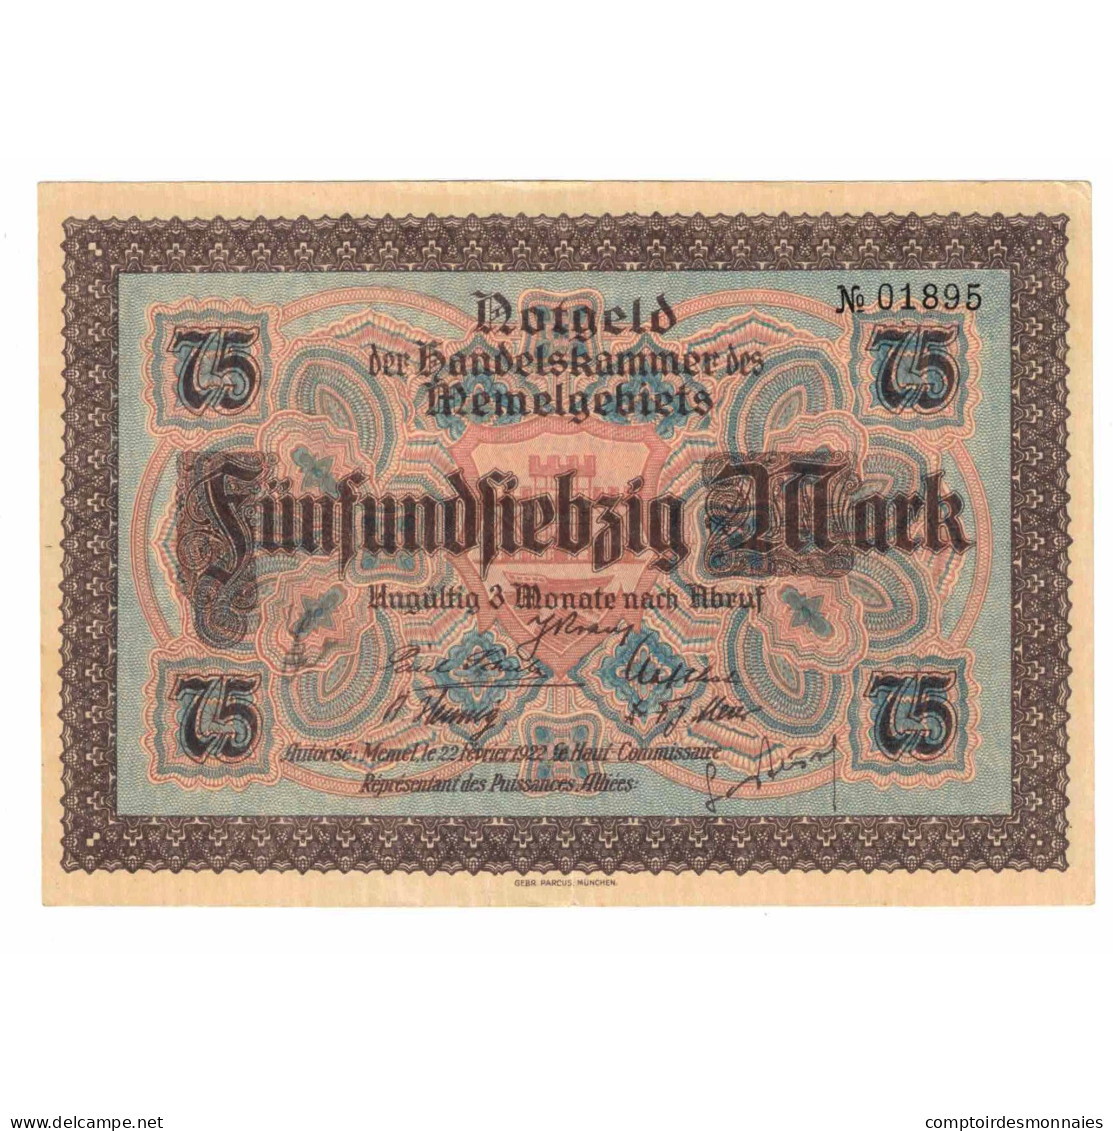 Billet, Memel, 75 Mark, 1922, 1922-02-22, KM:8, SPL - Lithuania